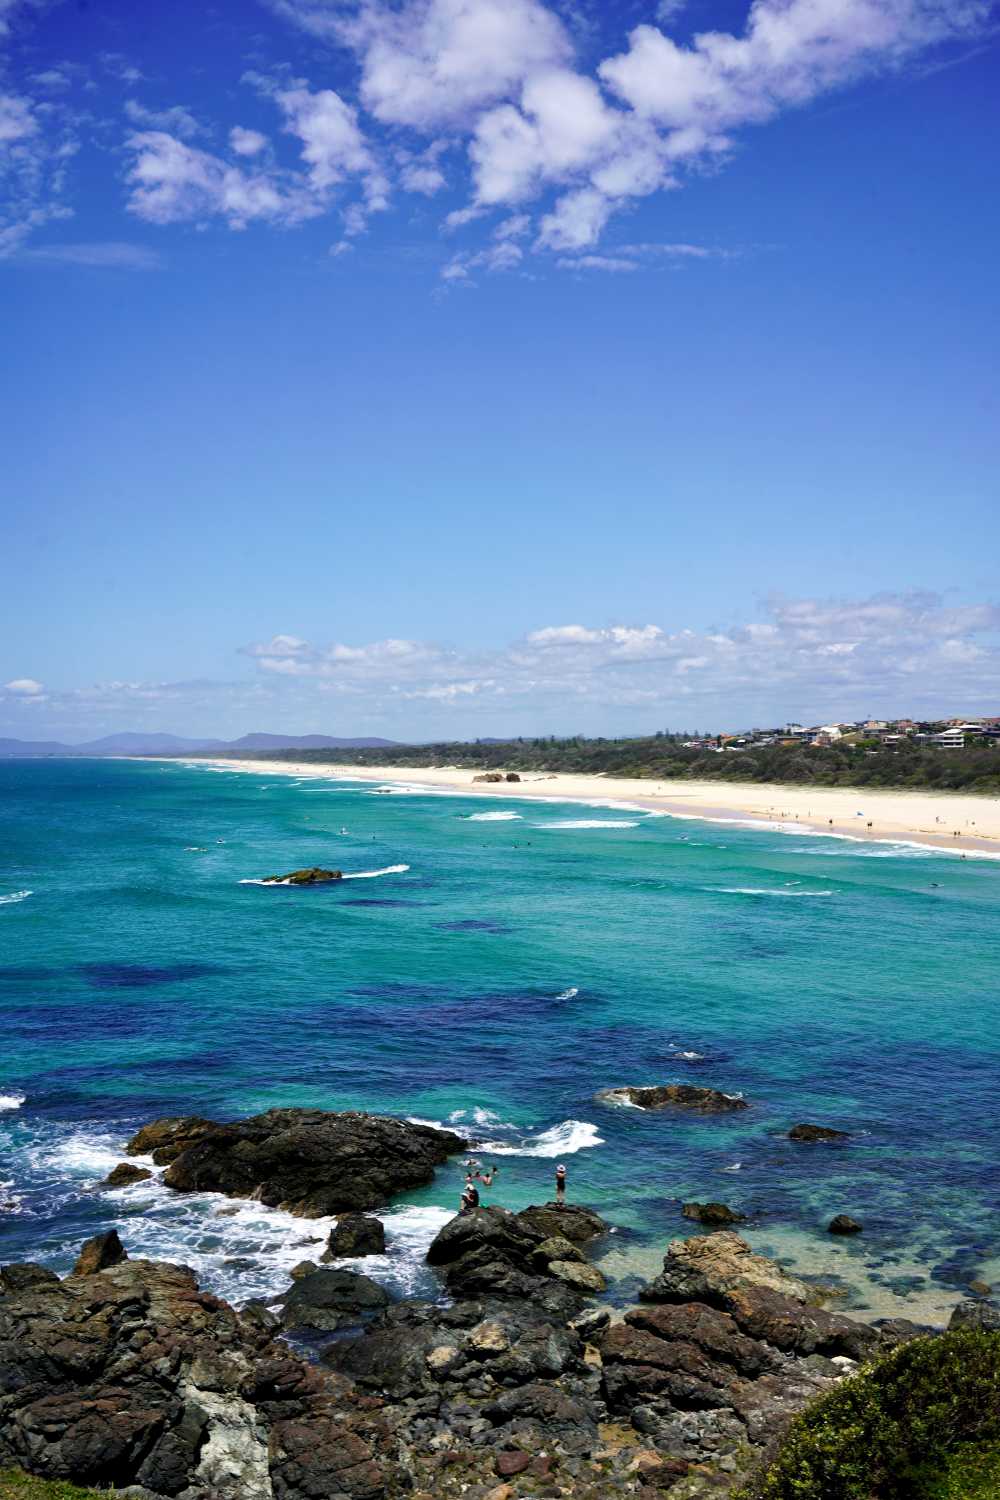 Découvrez Port Macquarie et ses plages de sable blanc pendant votre voyage en Australie.